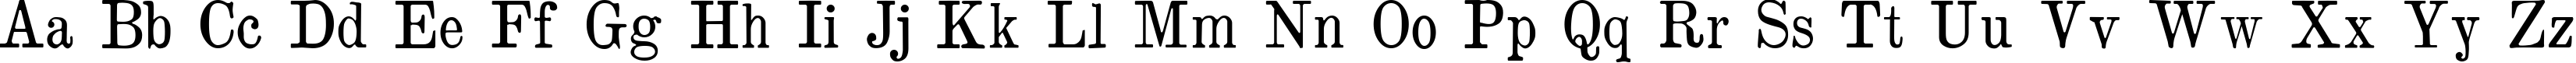 Пример написания английского алфавита шрифтом Brokgauz & Efron